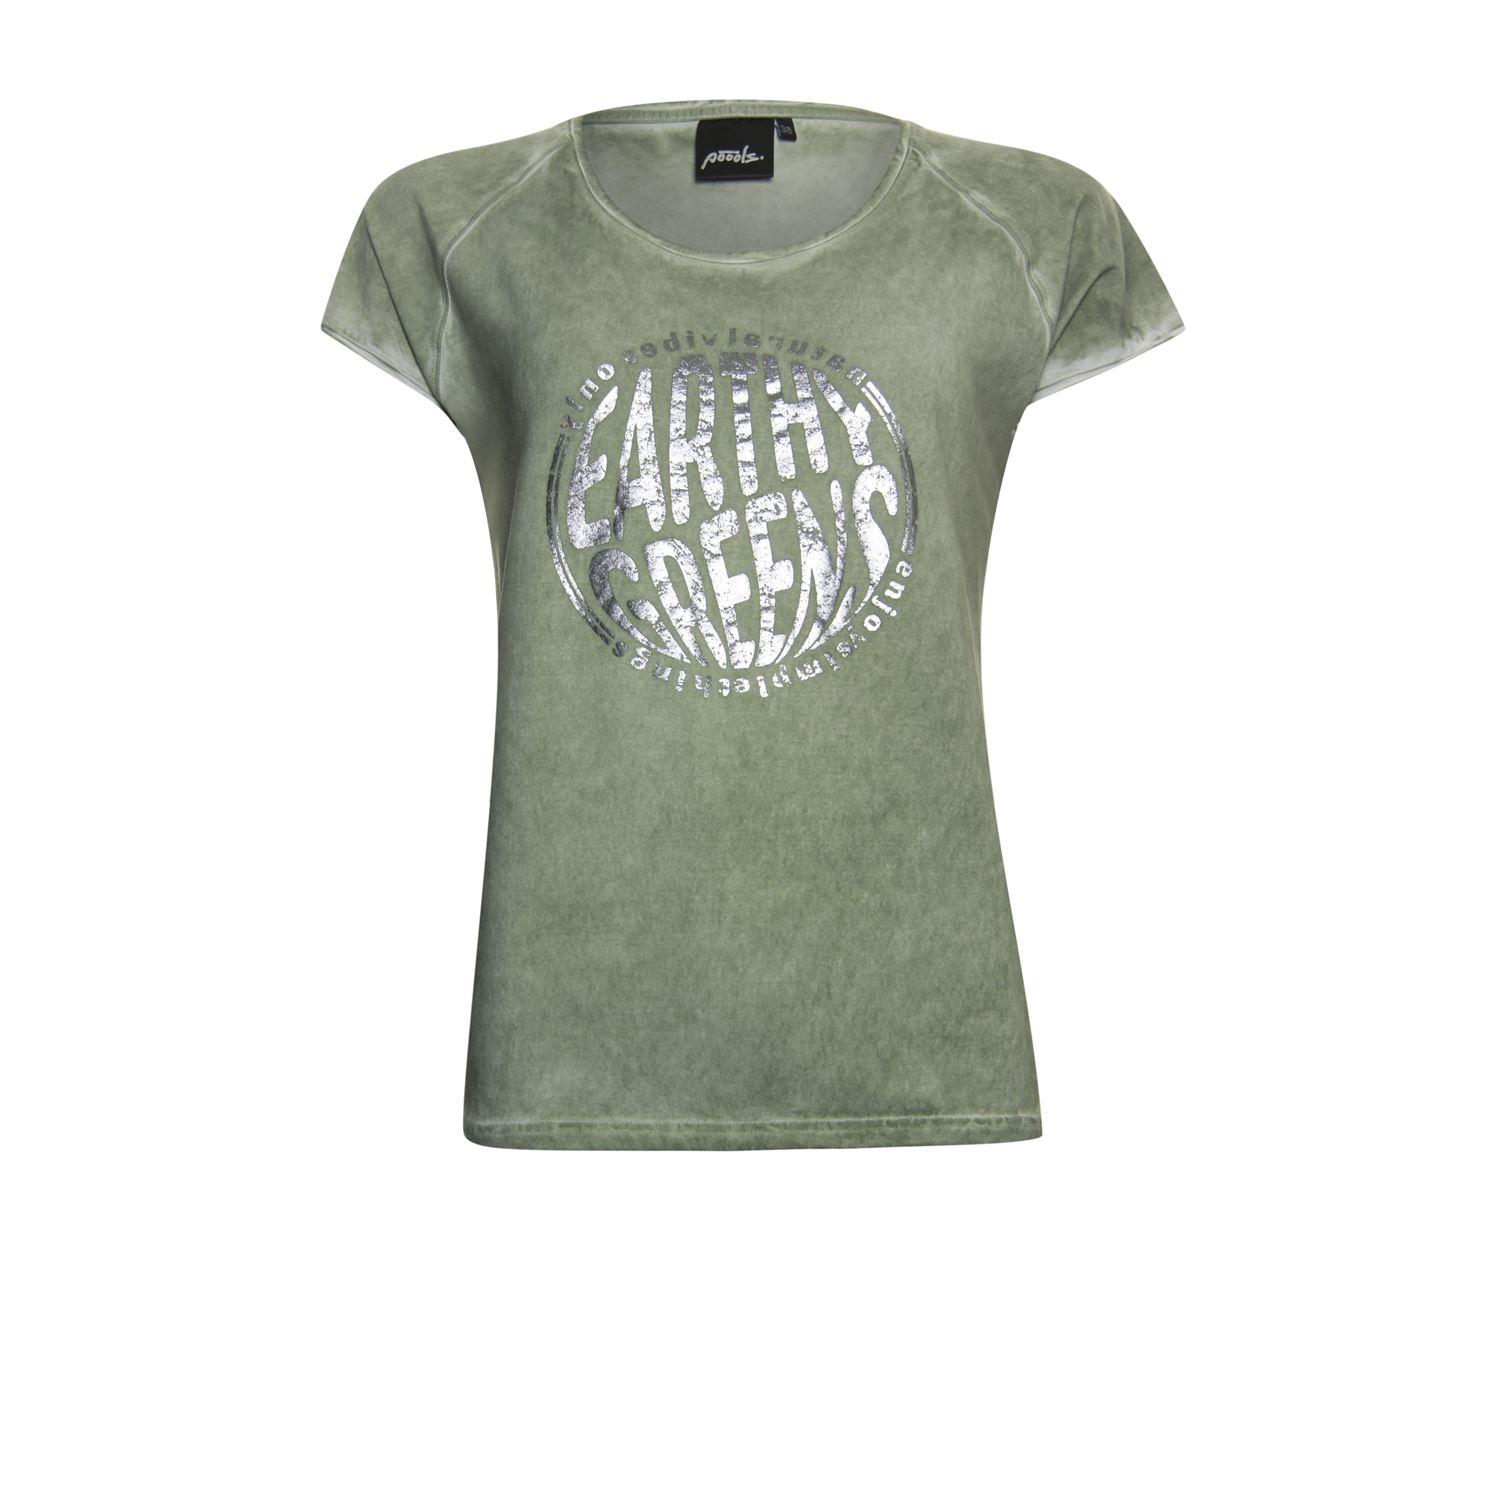 filosofie Eenvoud Archeologisch Poools T-shirt washed - Shop Poools dameskleding online